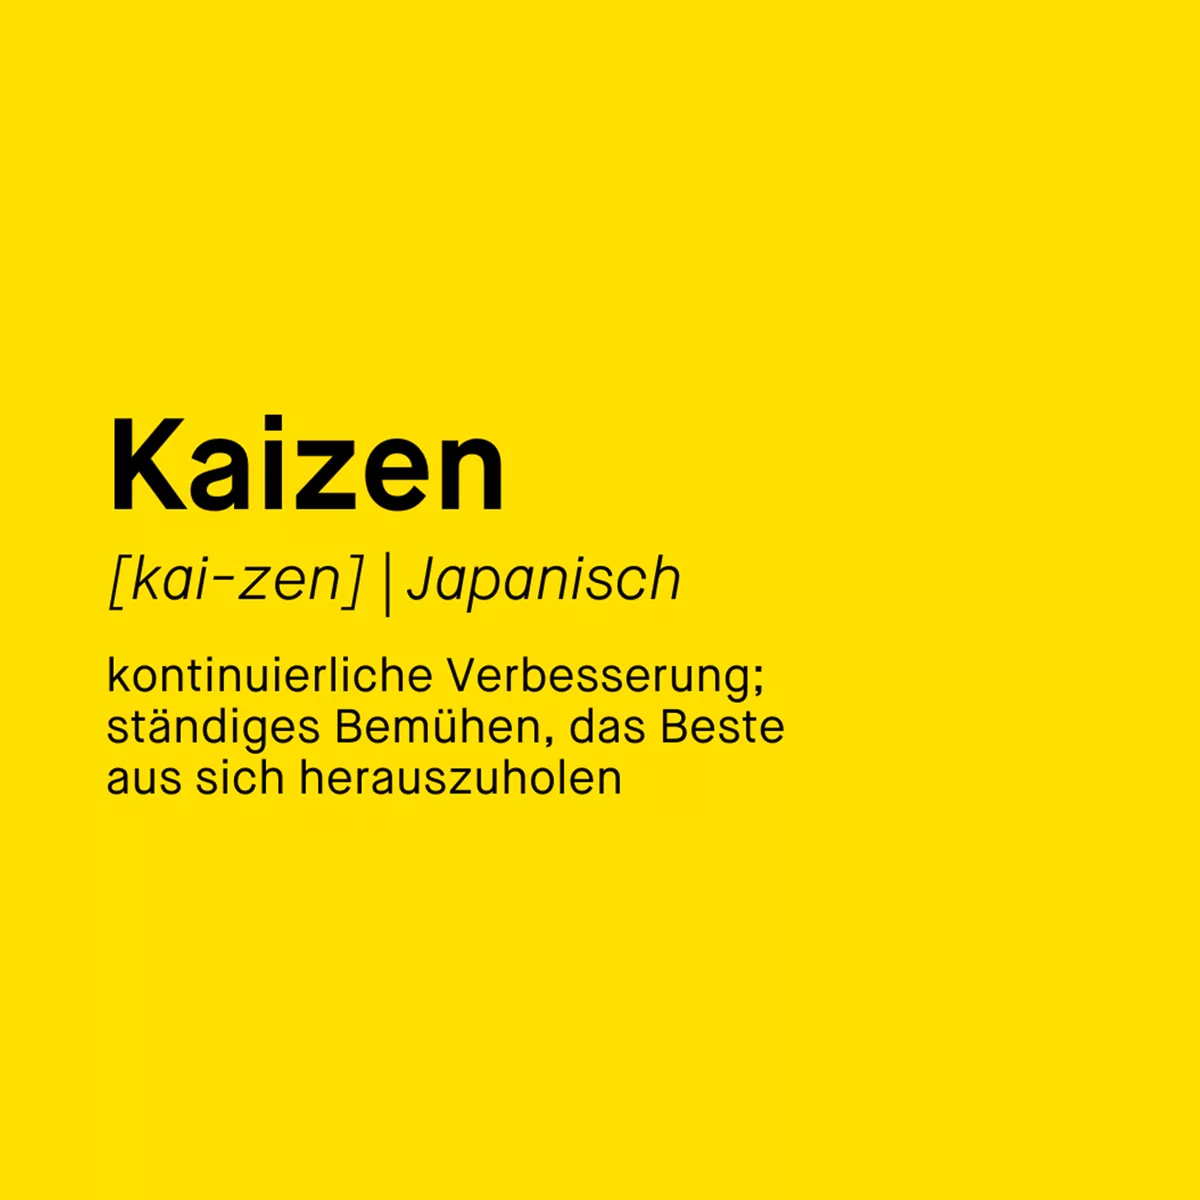 Kaizen-Defintion "kontinuierliche Verbesserung; ständiges Bemühen, das Beste aus sich herauszuholen". Frau hinter lila transparenten Wand.